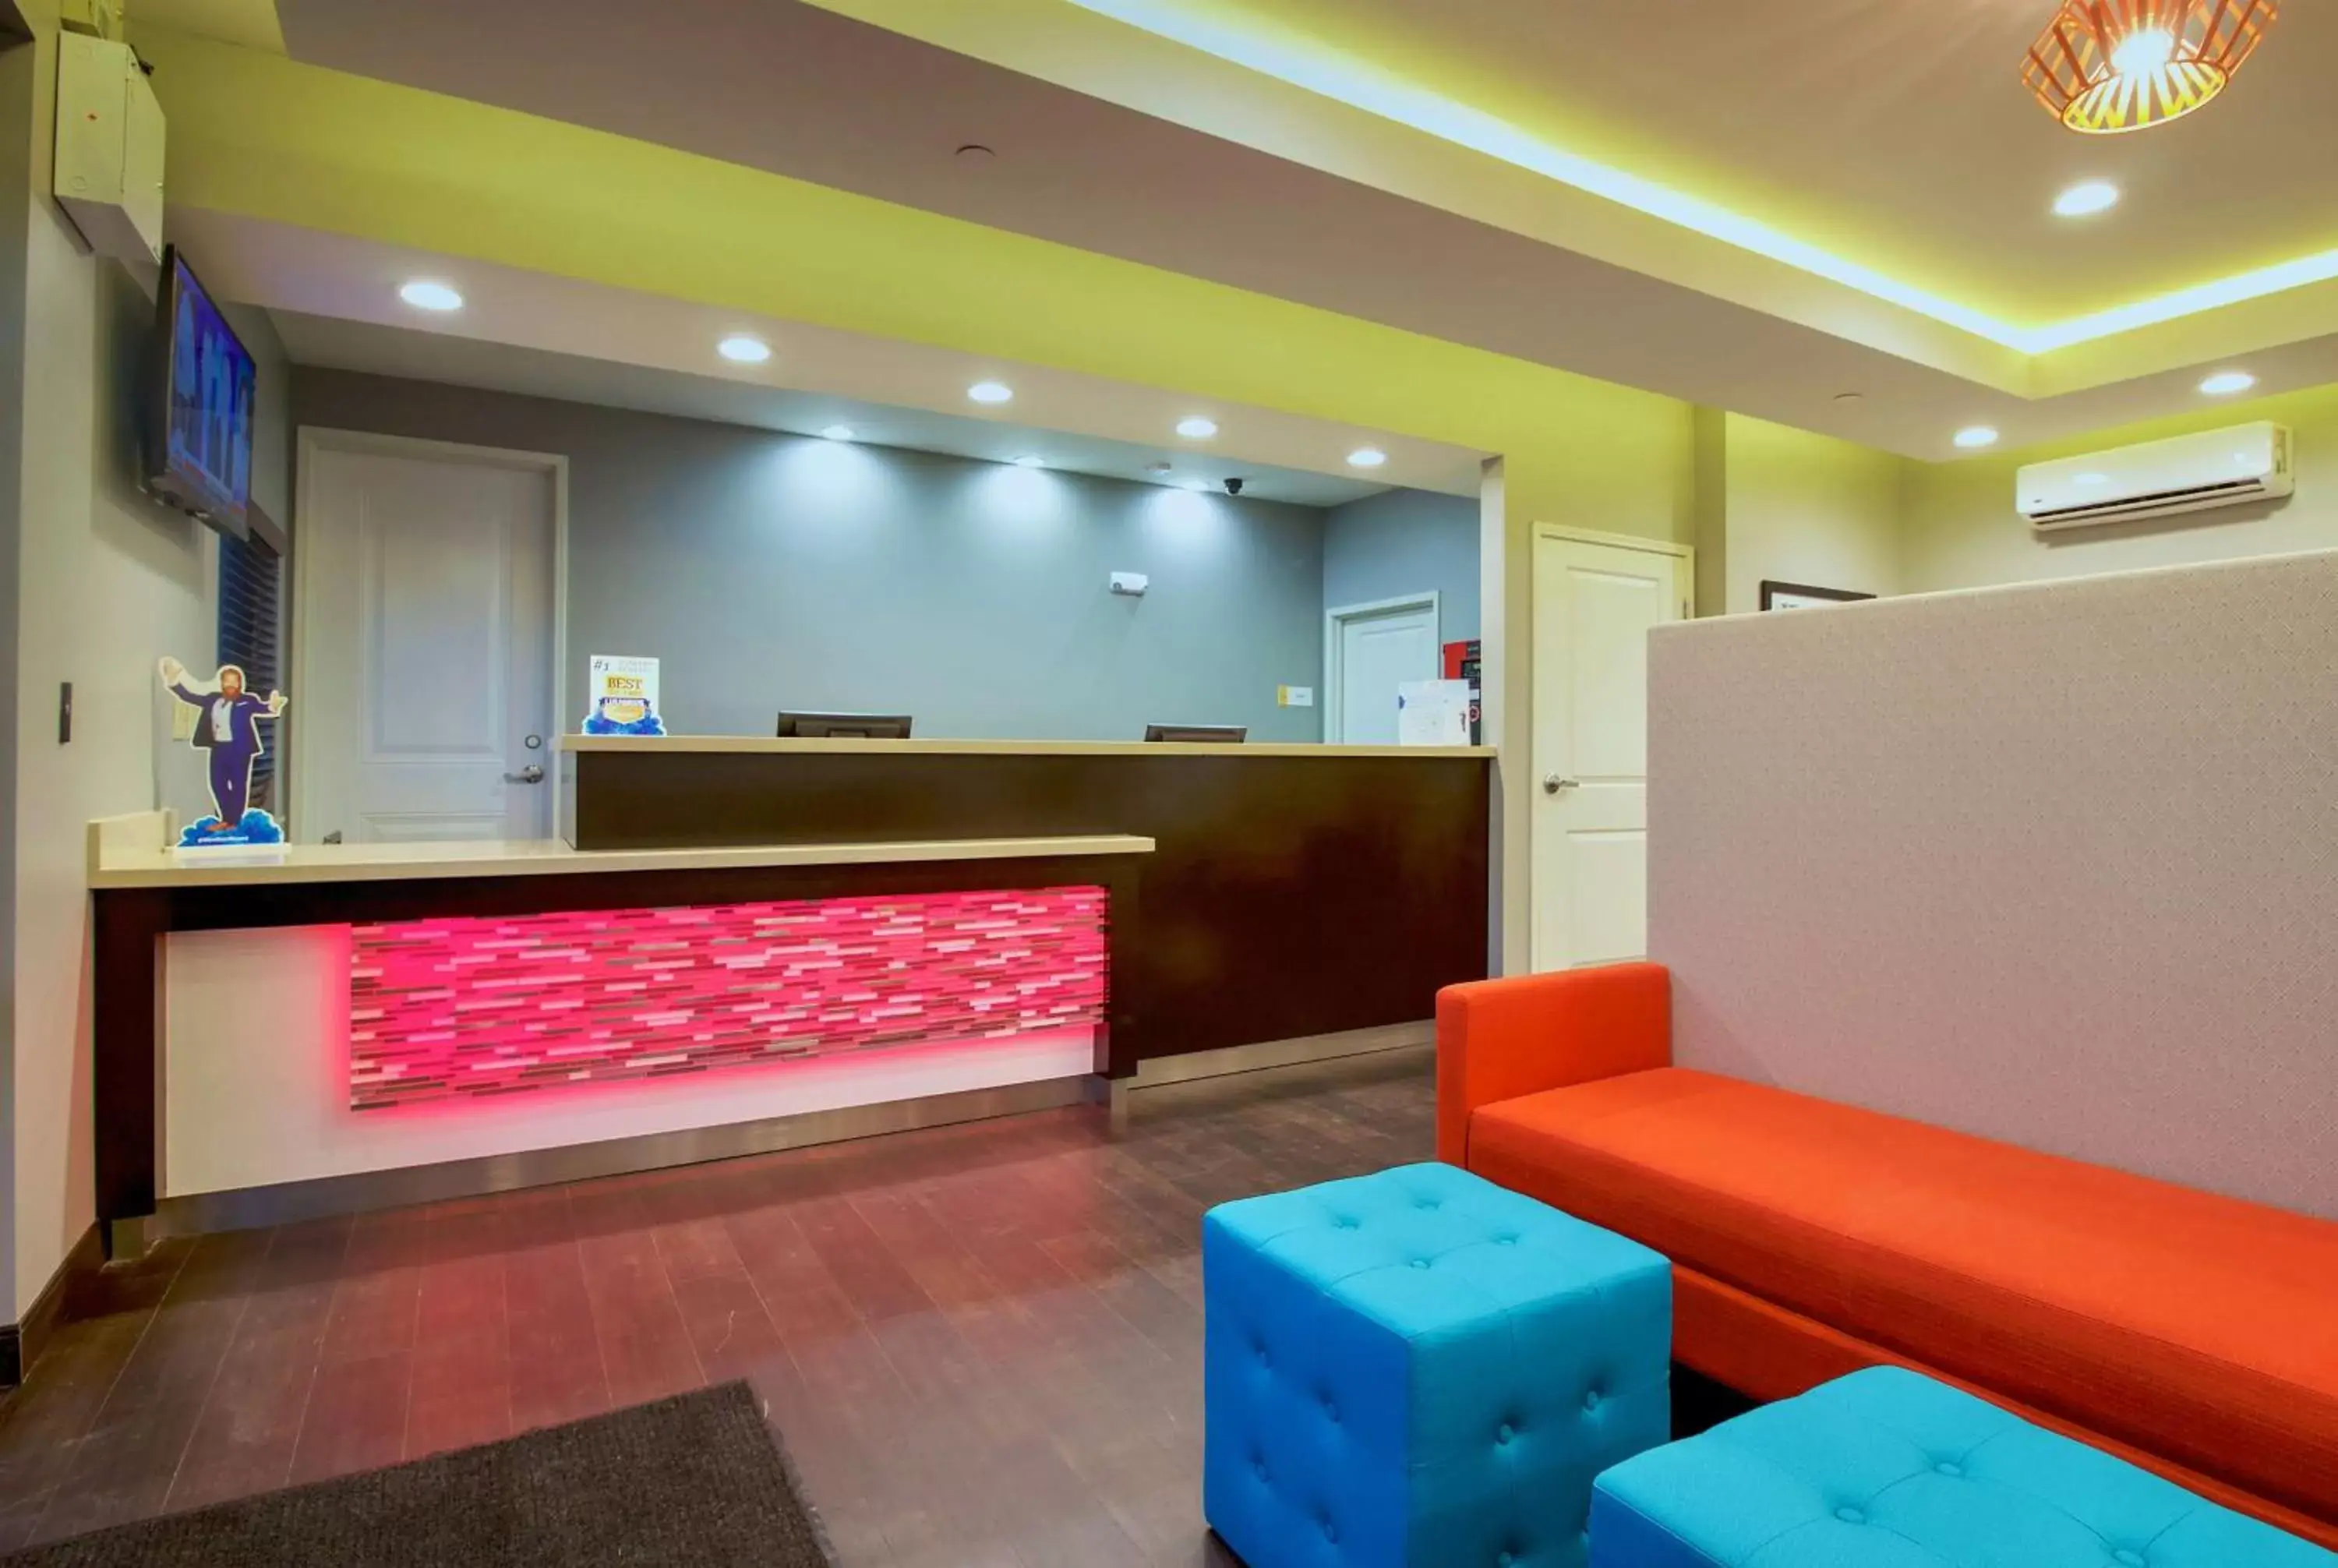 Lobby or reception, Lobby/Reception in Days Inn & Suites by Wyndham Port Arthur